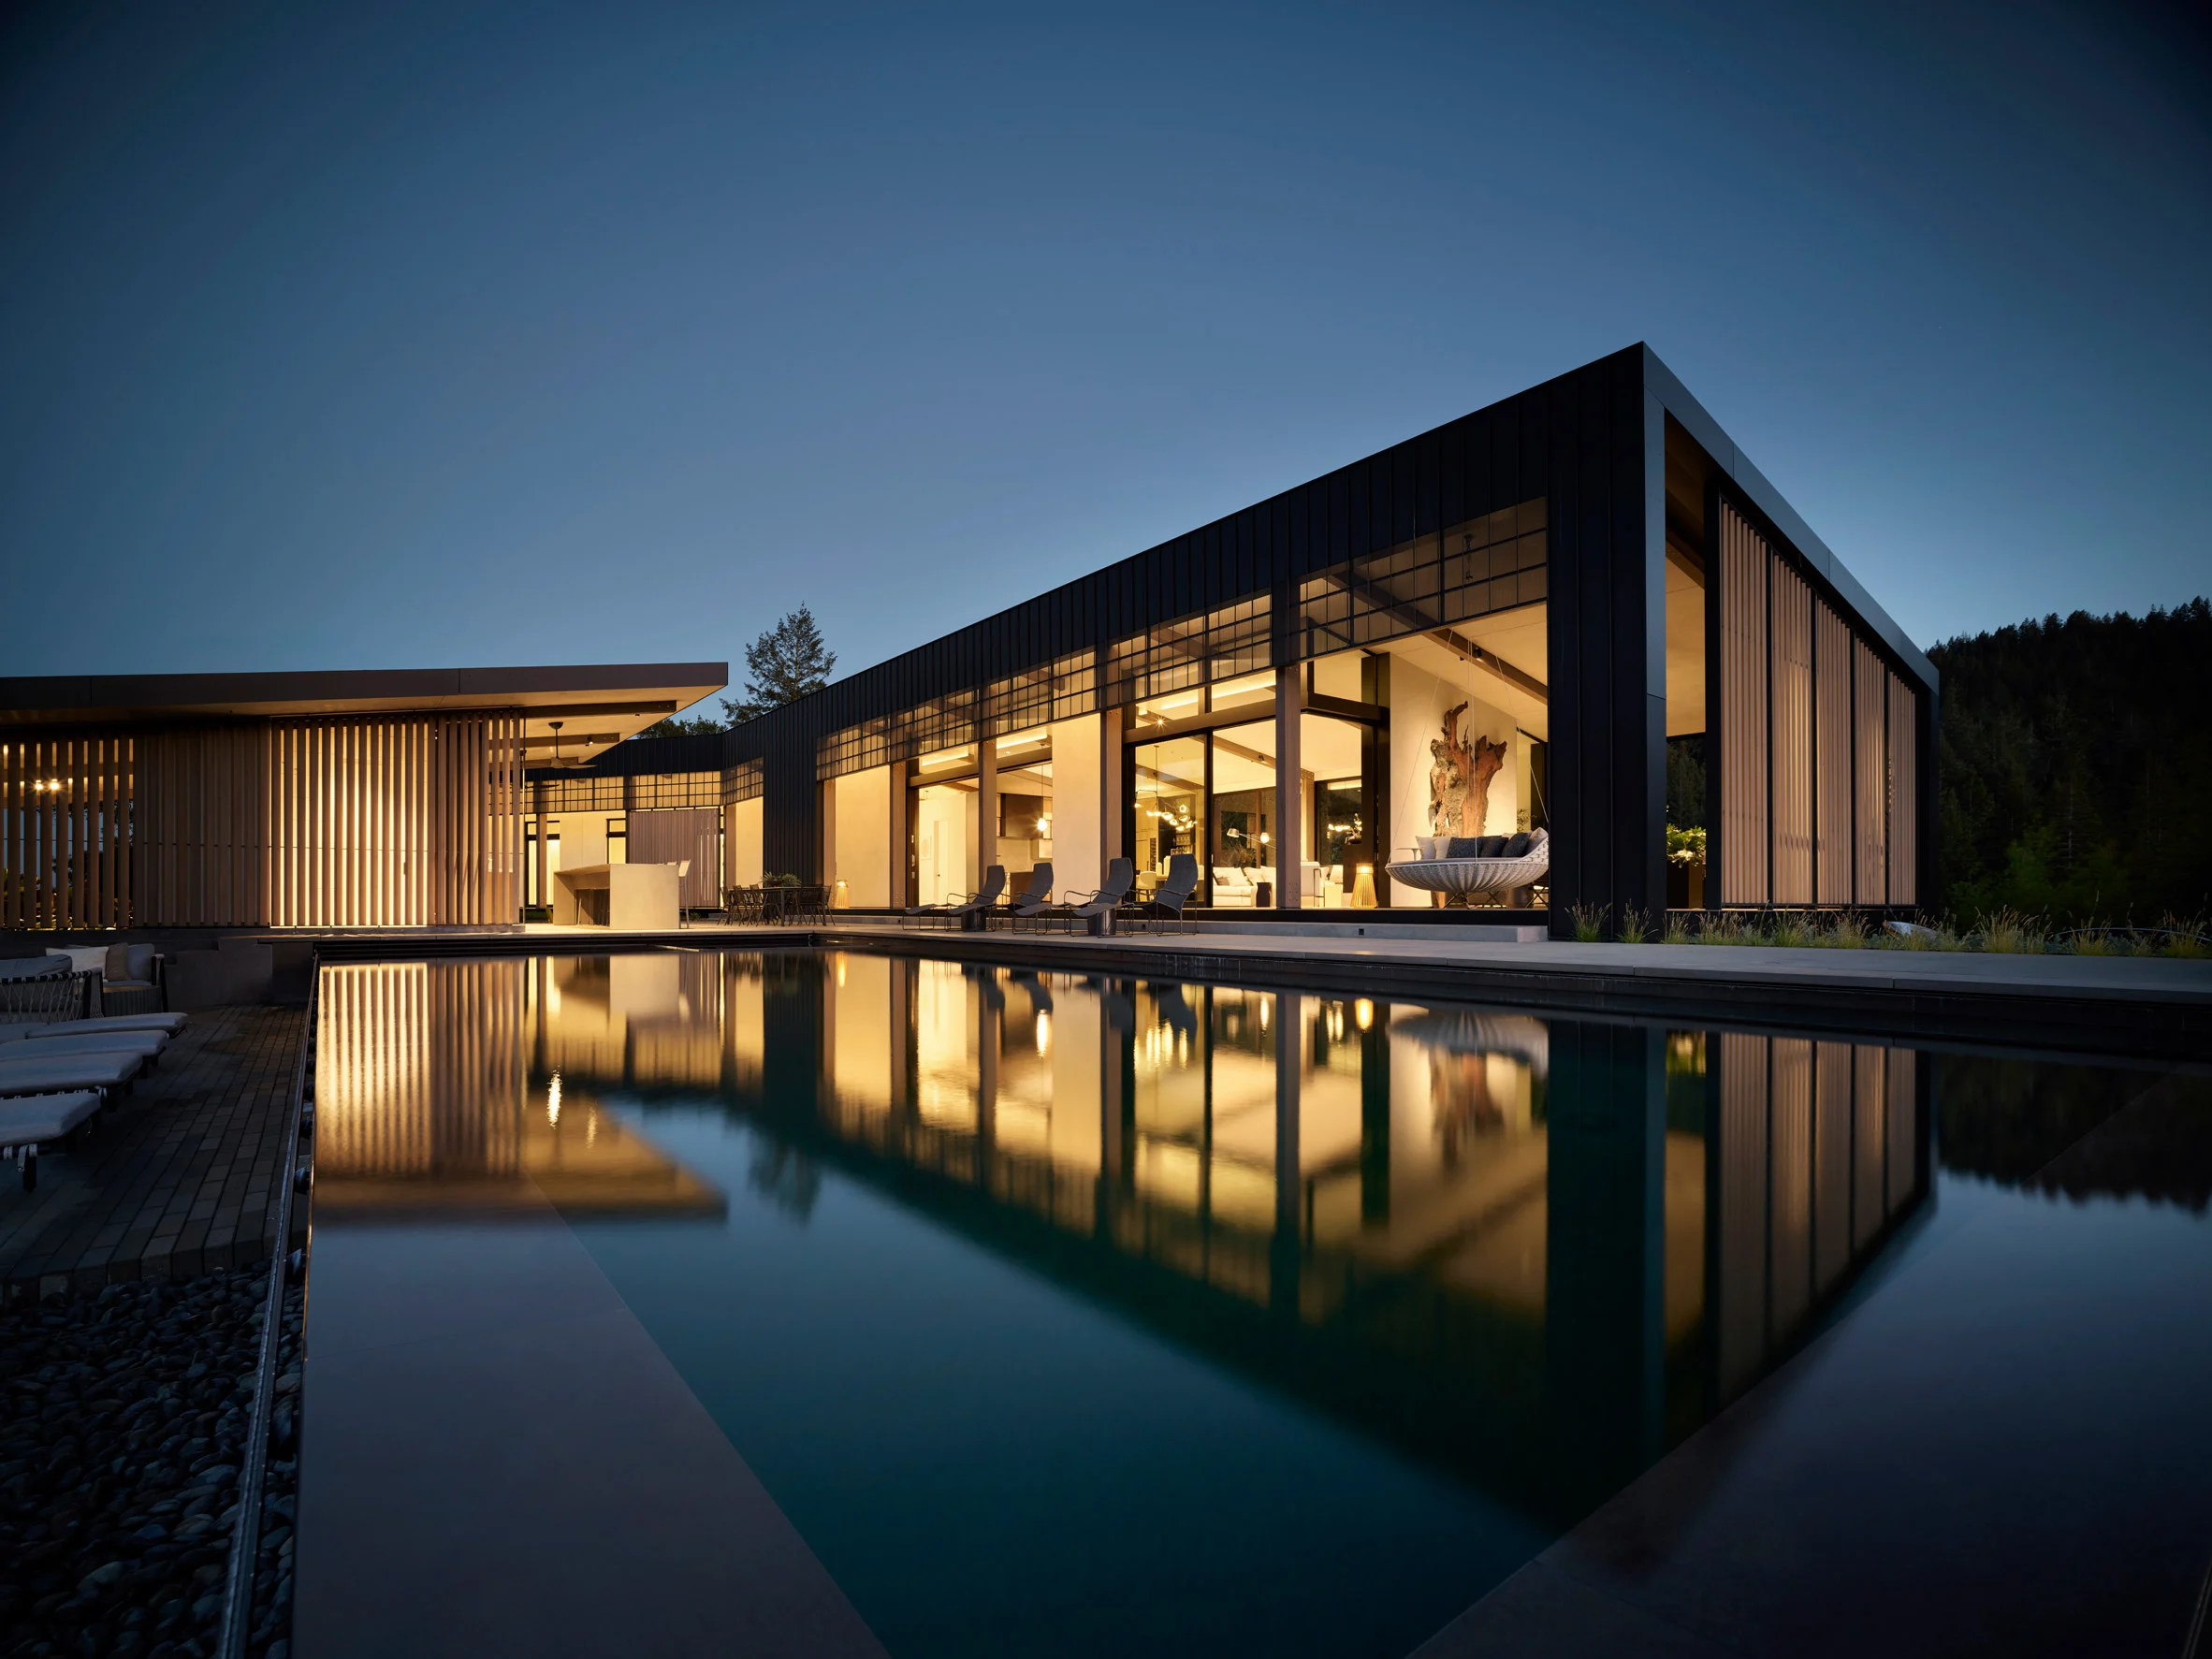 La vivienda es un refugio rural situado en Healdsburg (California) y su diseño fue realizado por el estudio local de arquitectura Studio VARA.